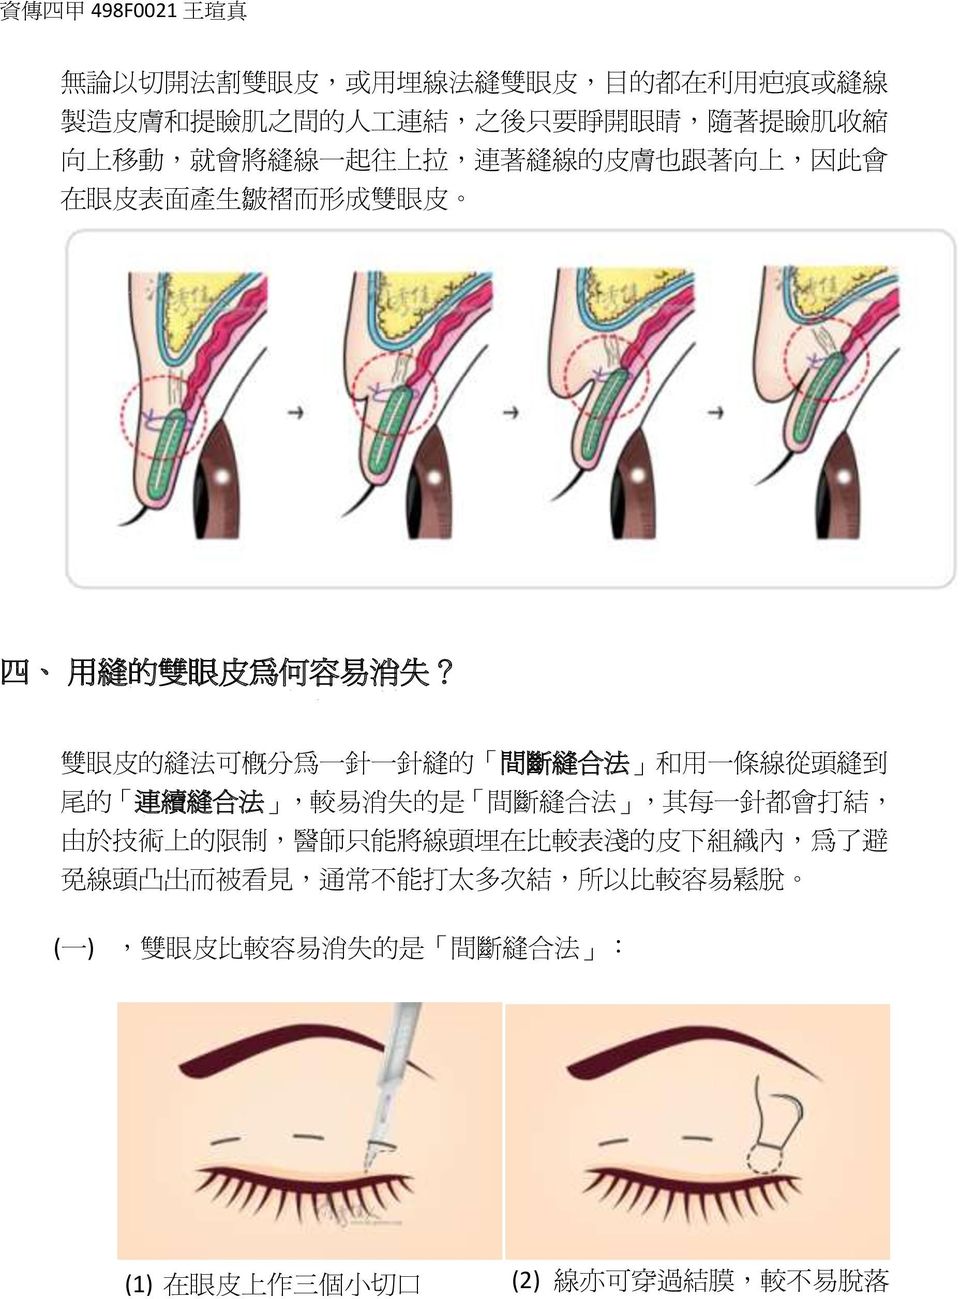 雙 眼 皮 的 縫 法 可 概 分 為 一 針 一 針 縫 的 間 斷 縫 合 法 和 用 一 條 線 從 頭 縫 到 尾 的 連 續 縫 合 法, 較 易 消 失 的 是 間 斷 縫 合 法, 其 每 一 針 都 會 打 結, 由 於 技 術 上 的 限 制, 醫 師 只 能 將